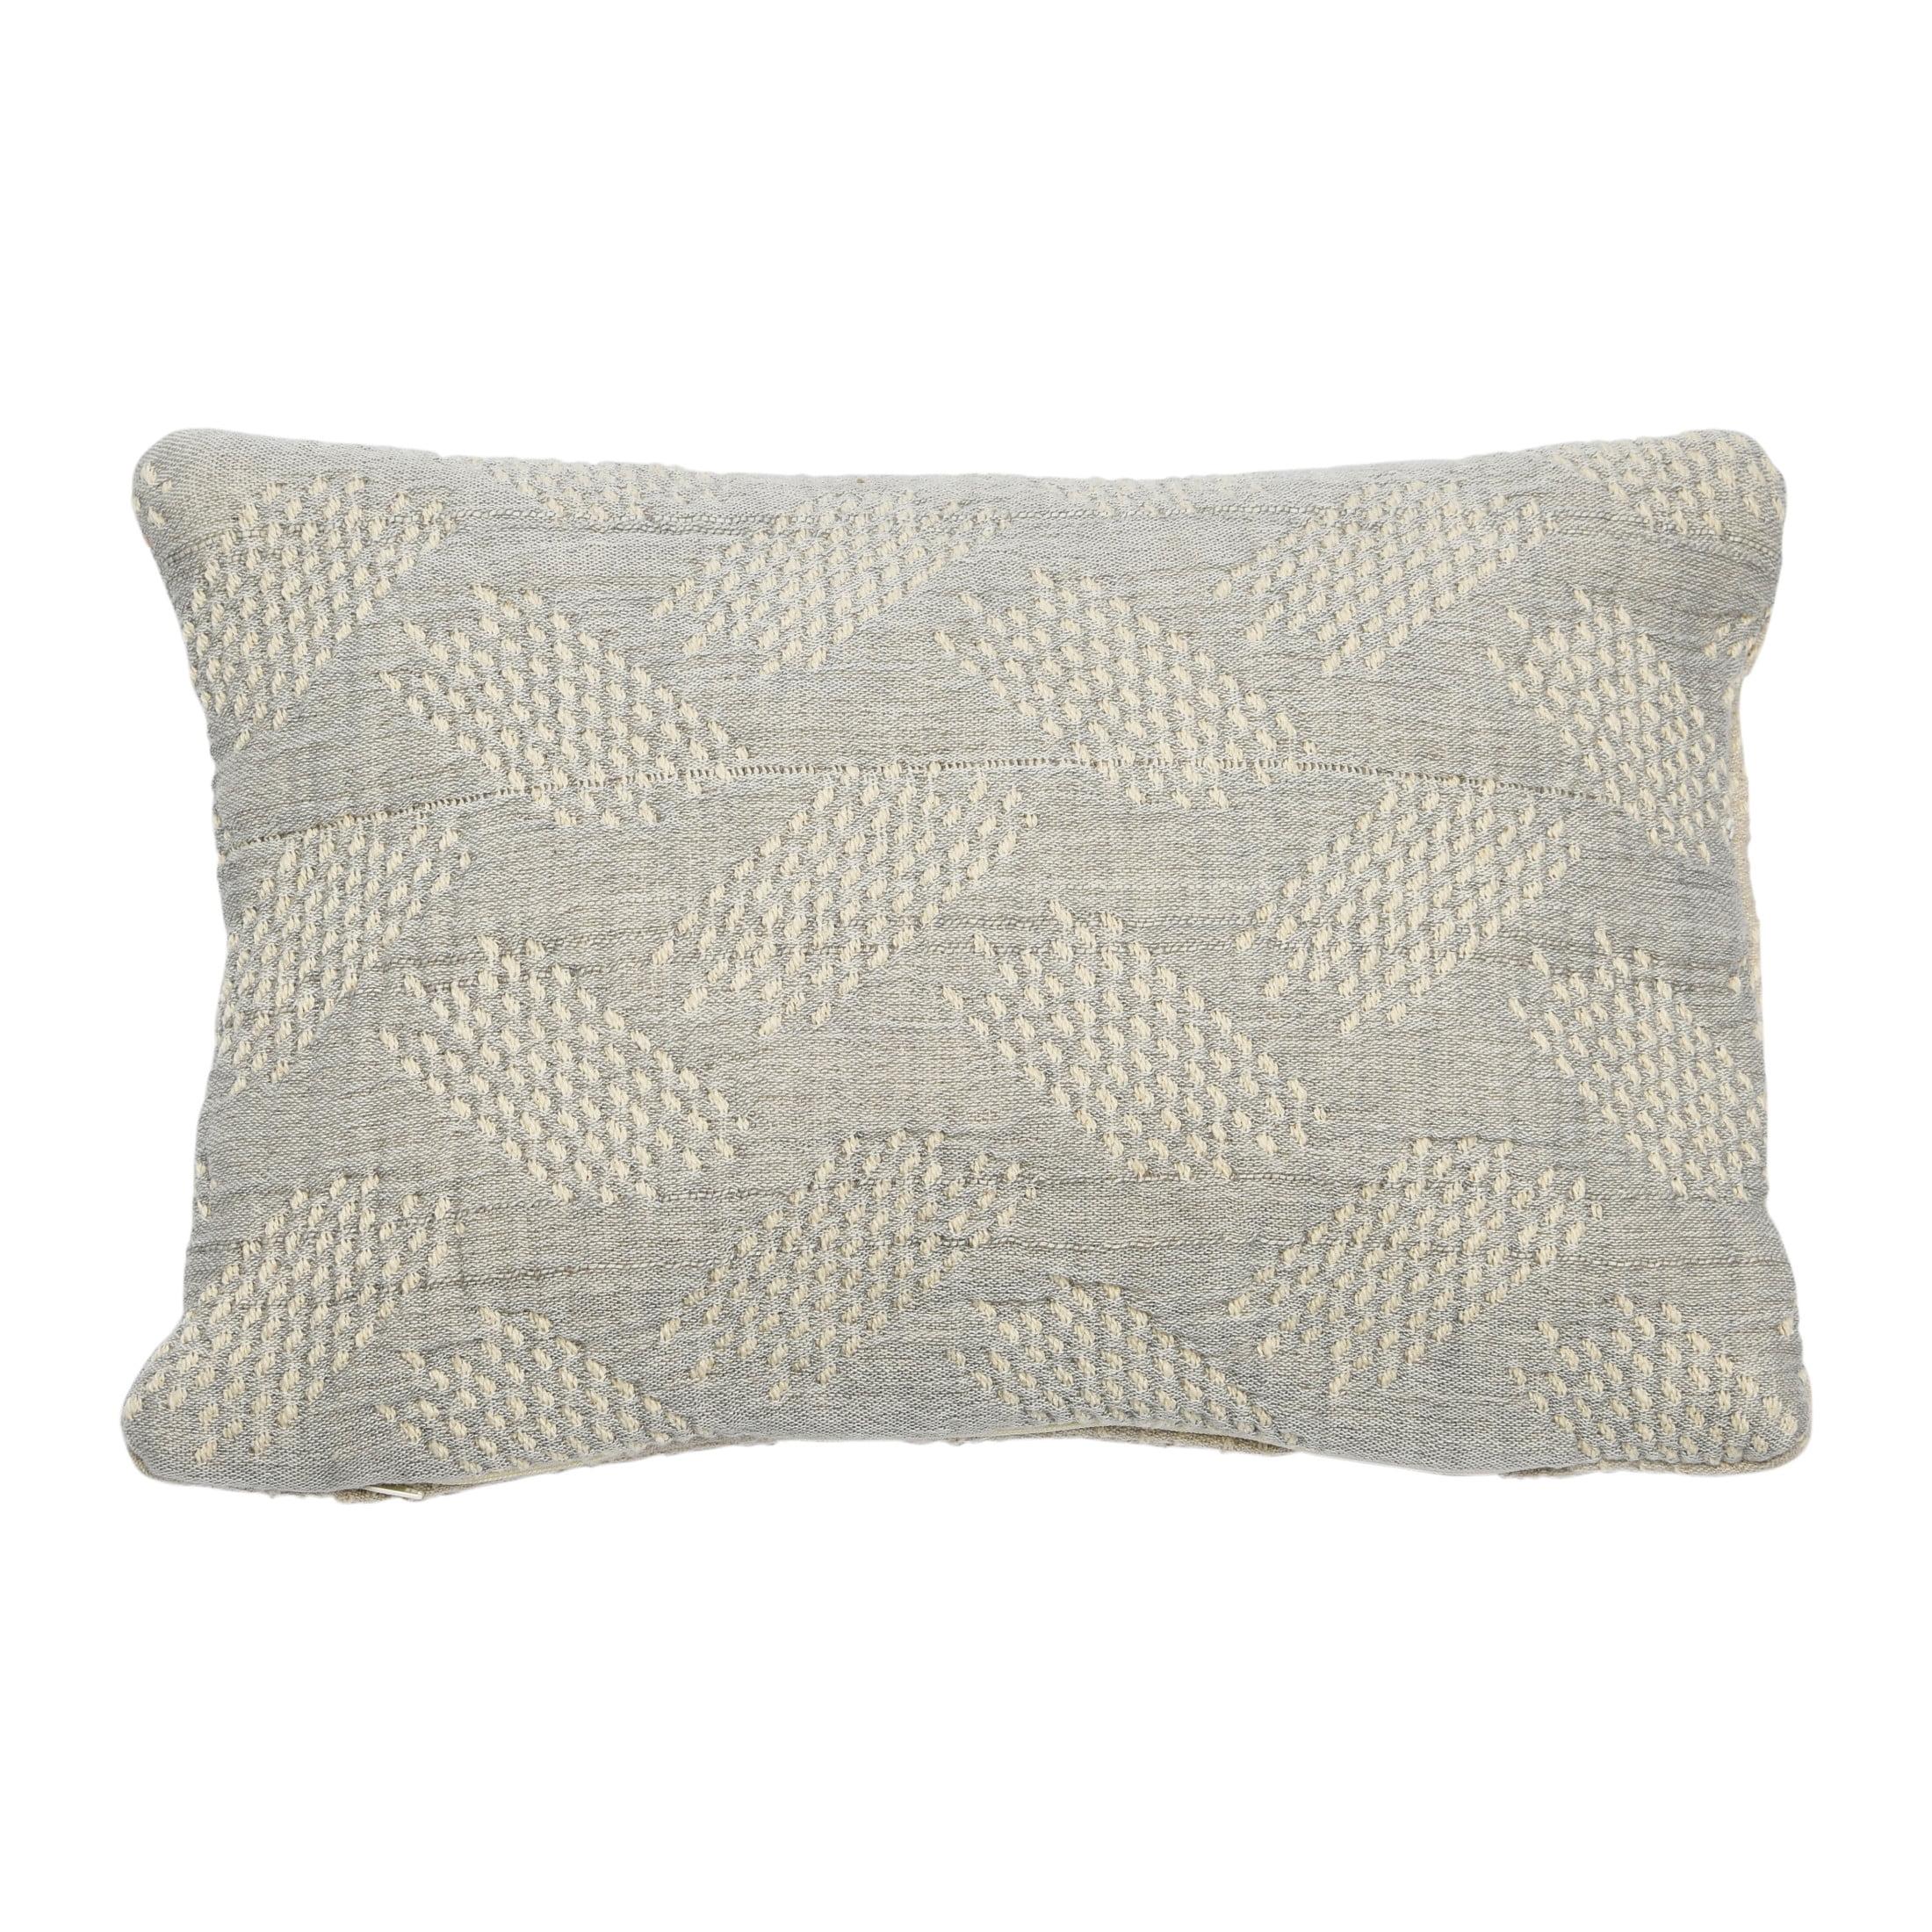 Taupe and Cream Cotton Jacquard Lumbar Pillow